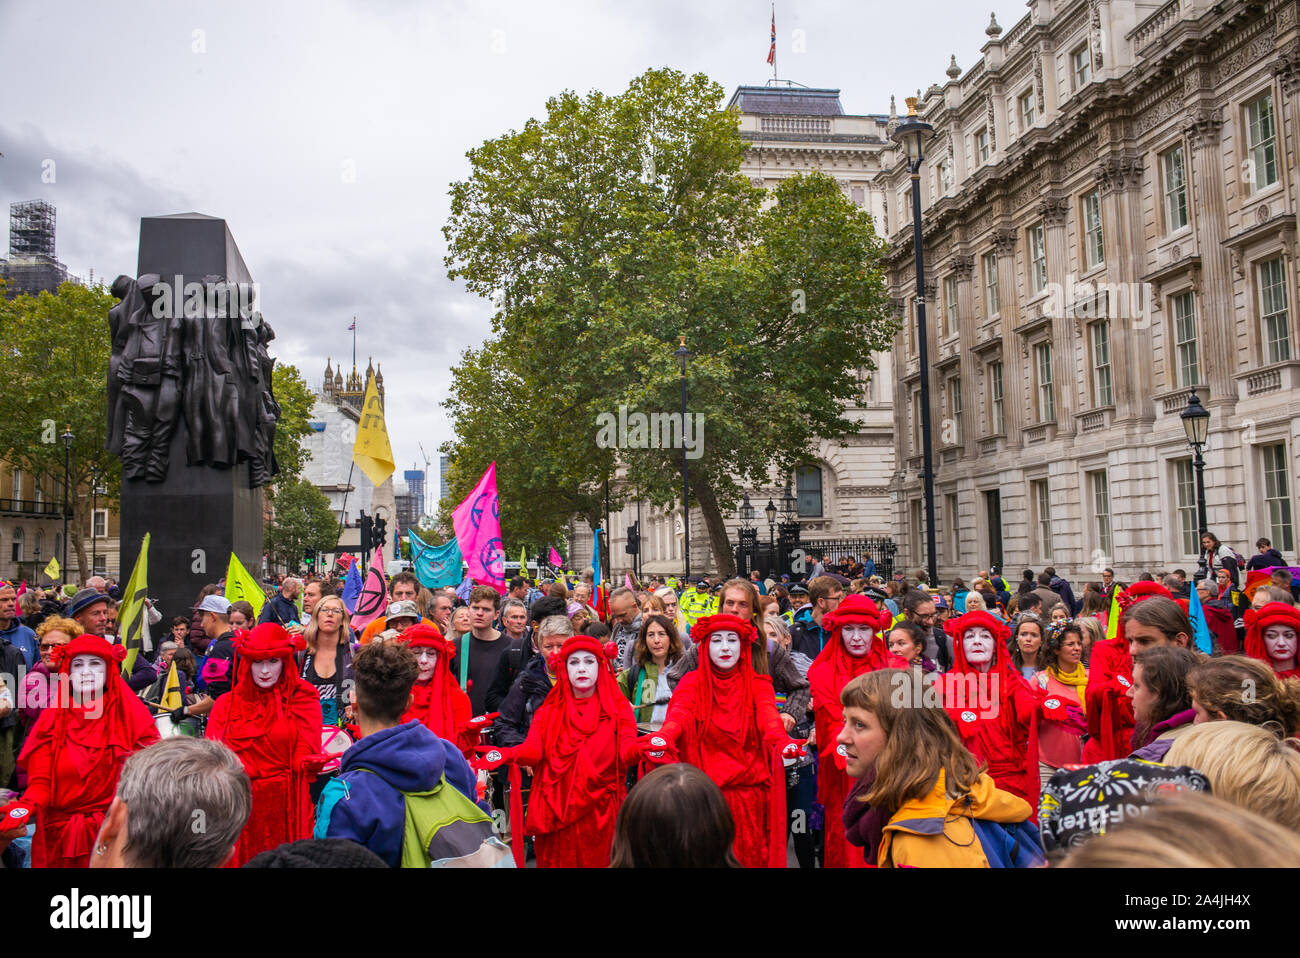 Rébellion Extinction protestations, la Brigade rouge/rouge rebelles en robes, Whitehall, Londres, 7 octobre 2019 Banque D'Images